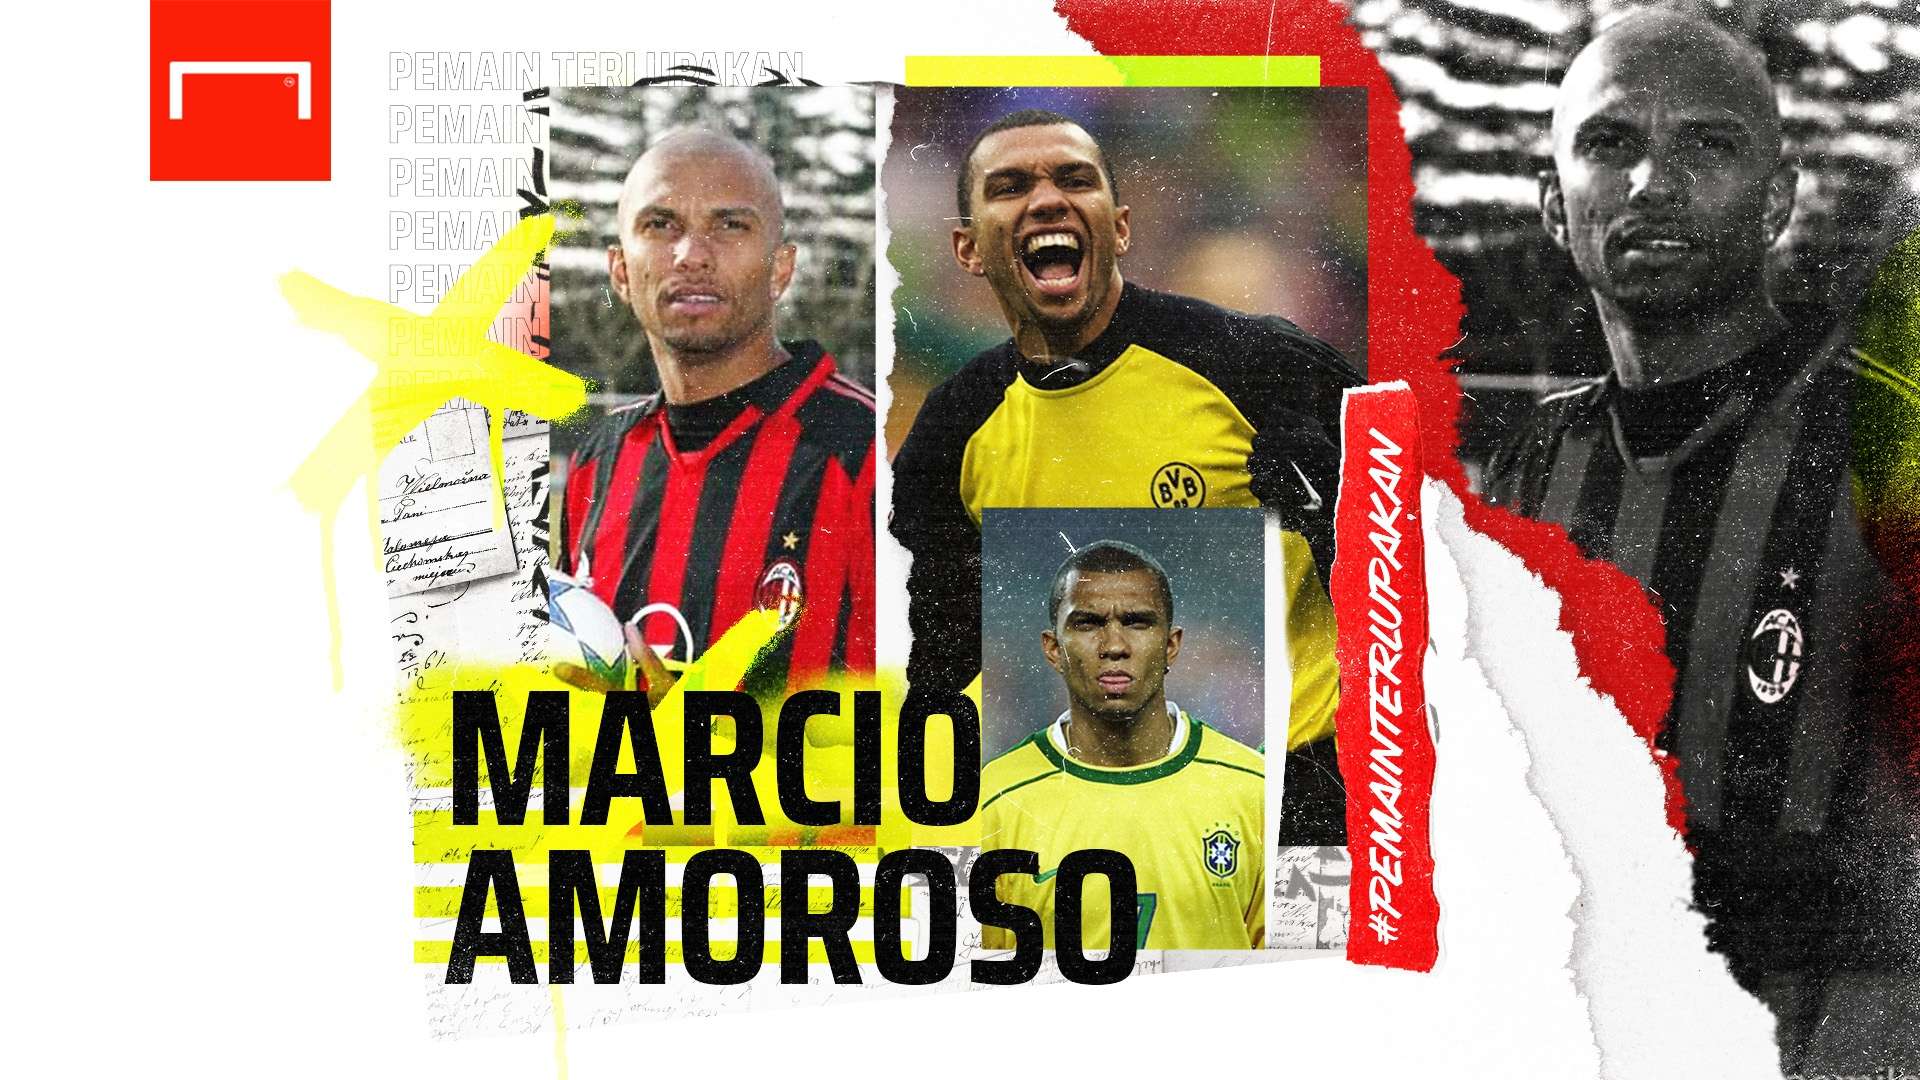 Marcio Amoroso - Pemain Terlupakan